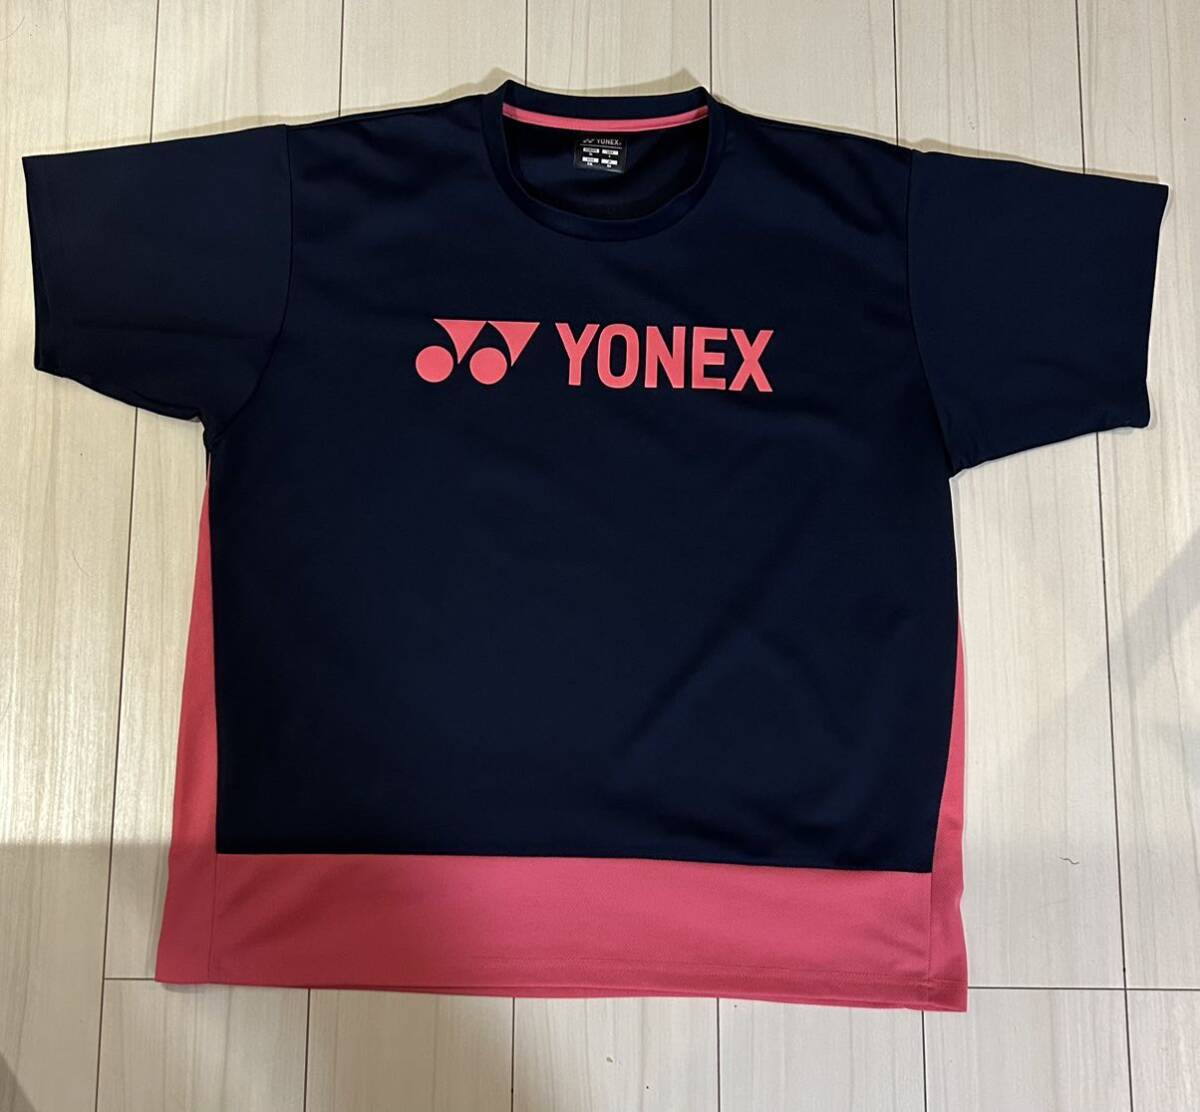 送料無料 ヨネックス バドミントン テニス ユニXO 半袖Tシャツ 限定 ネイビー ピンク ビッグロゴ サイドの切り返しがおしゃれです 美品希少